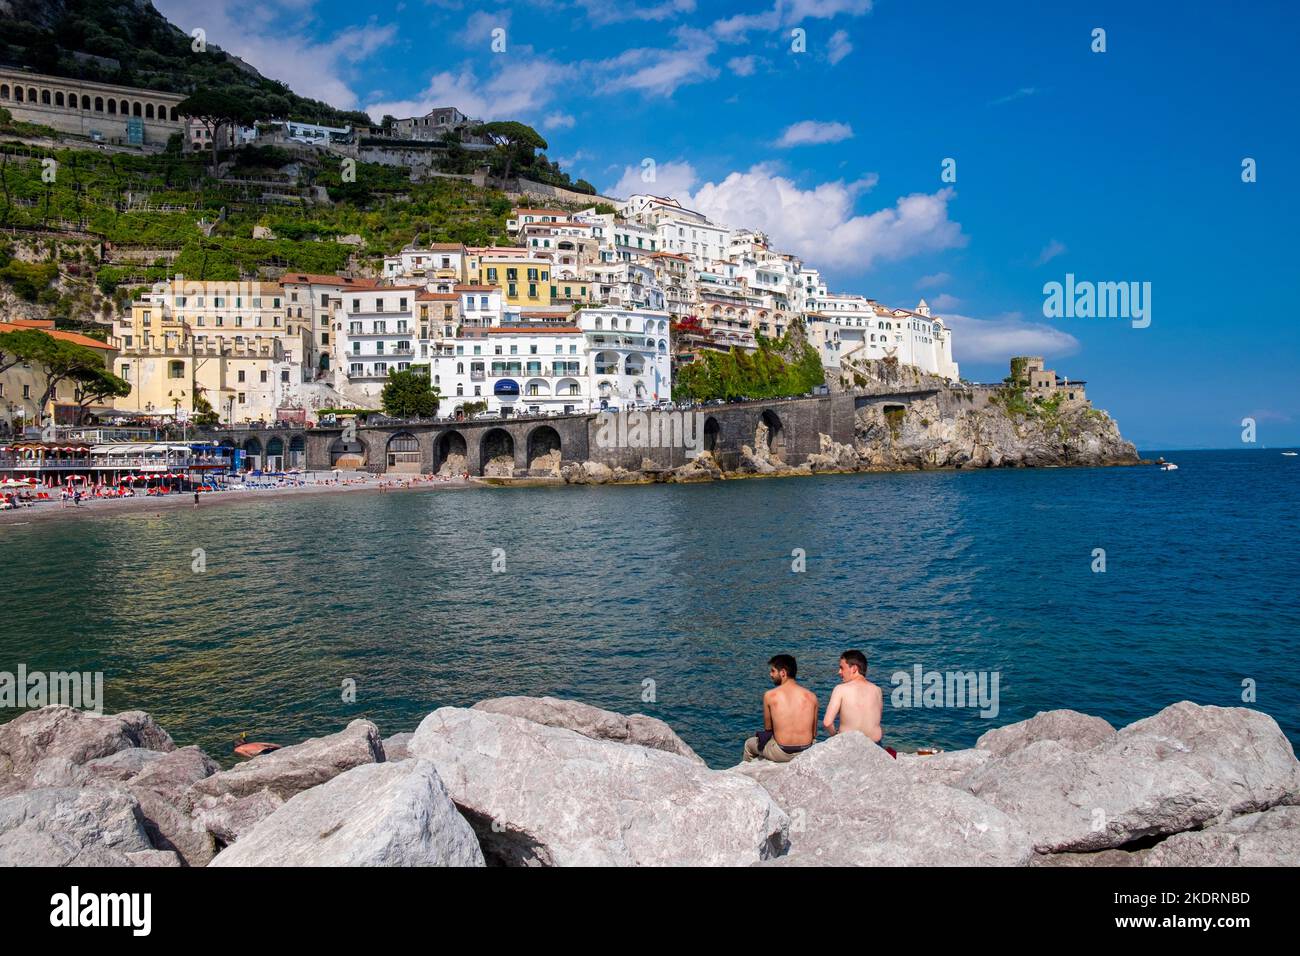 Die Stadt Amalfi an der italienischen Amalfiküste, von der Steinkofel aus gesehen, die den Hafen schützt, mit 2 Schwimmern, die zusehen. Stockfoto